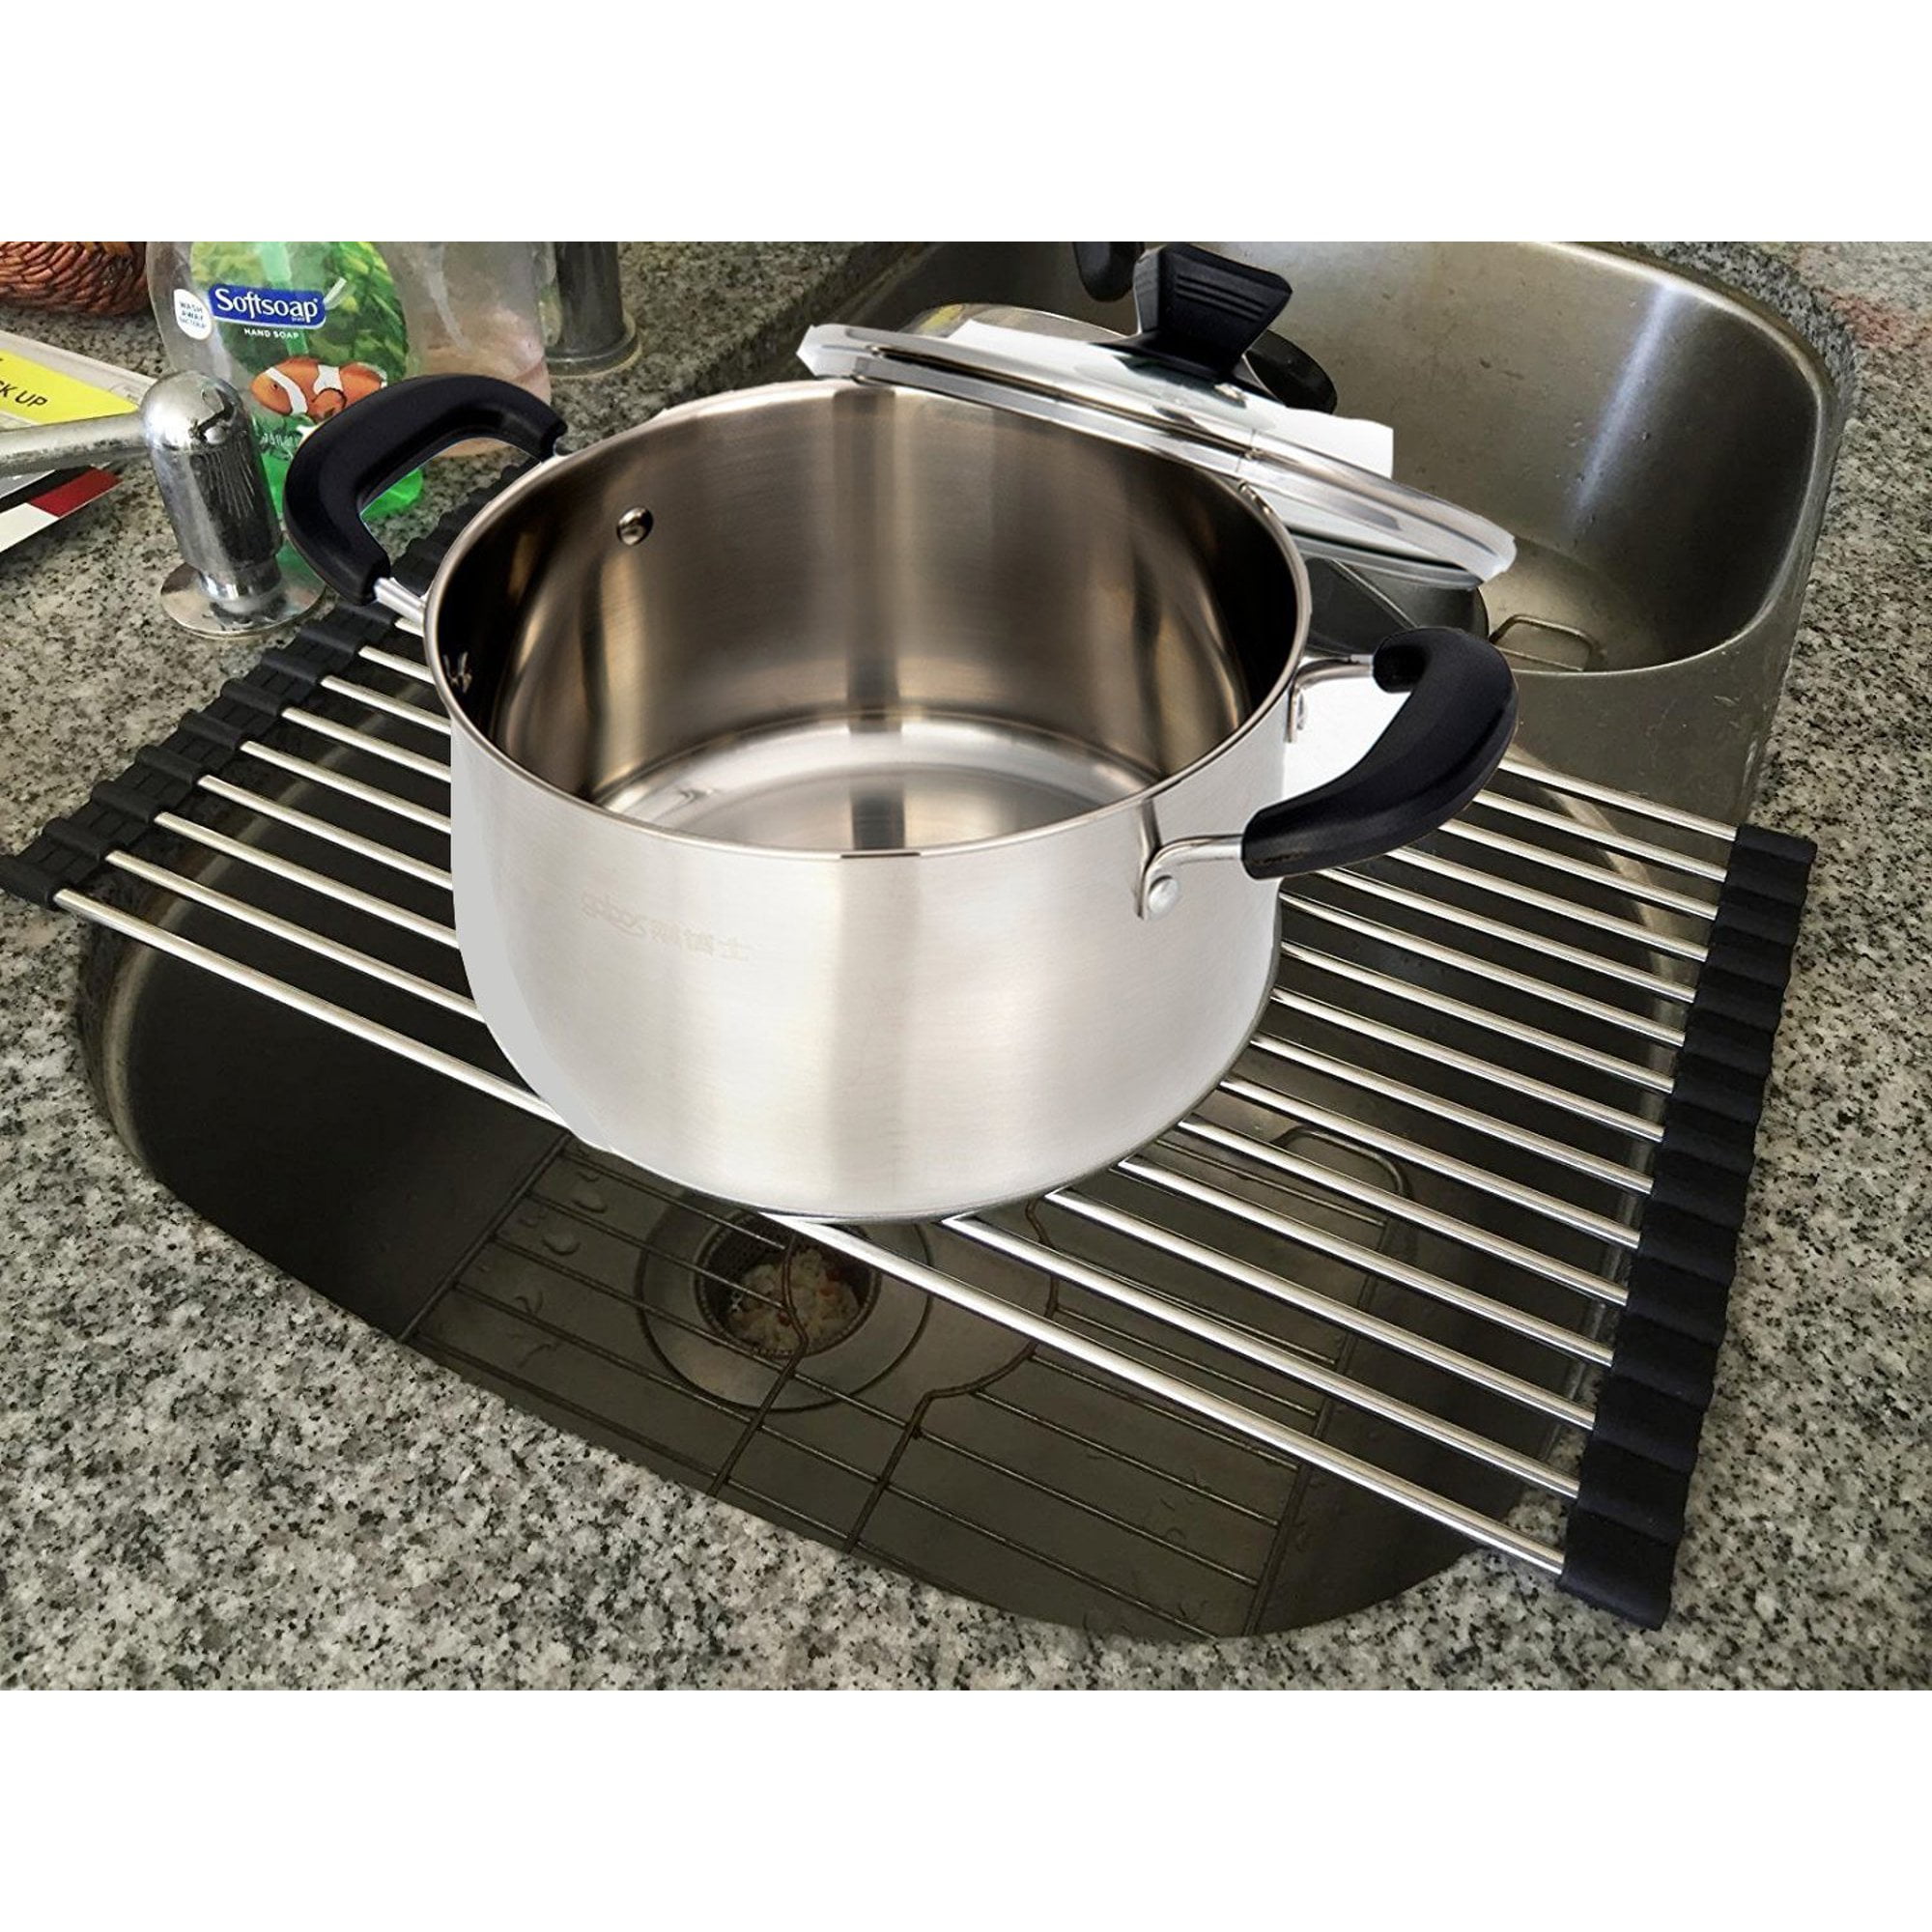 FNDDR03 Stainless Steel Foldable Dish Drying Rack Multipurpose